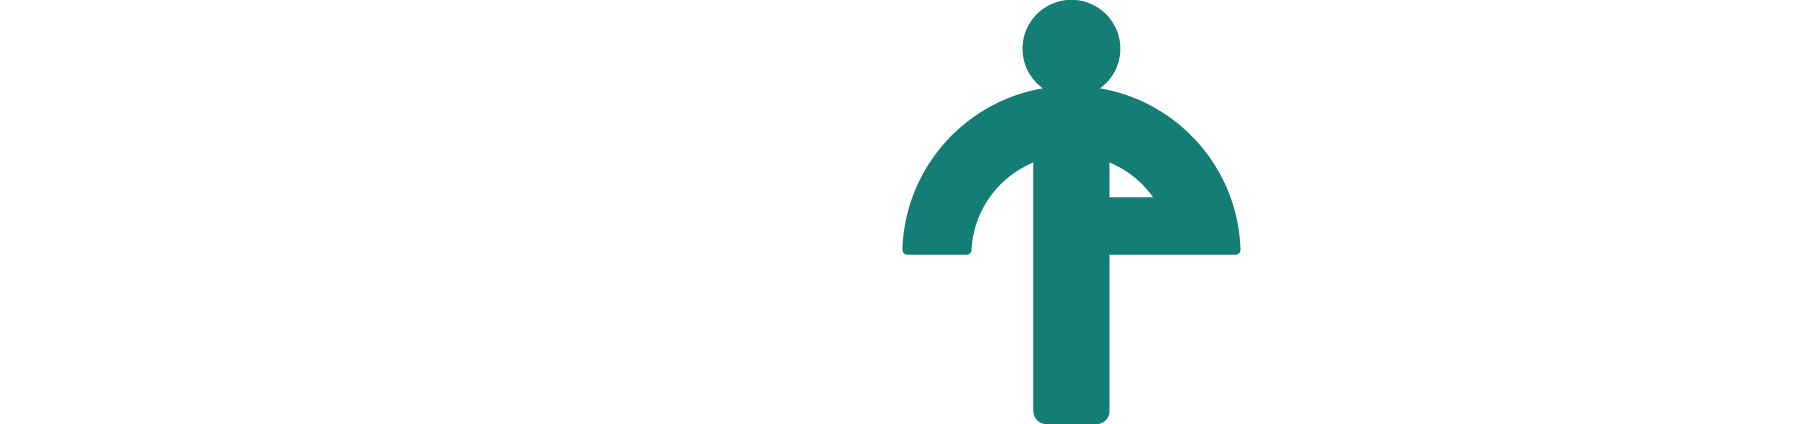 Tomorrow's People Logo